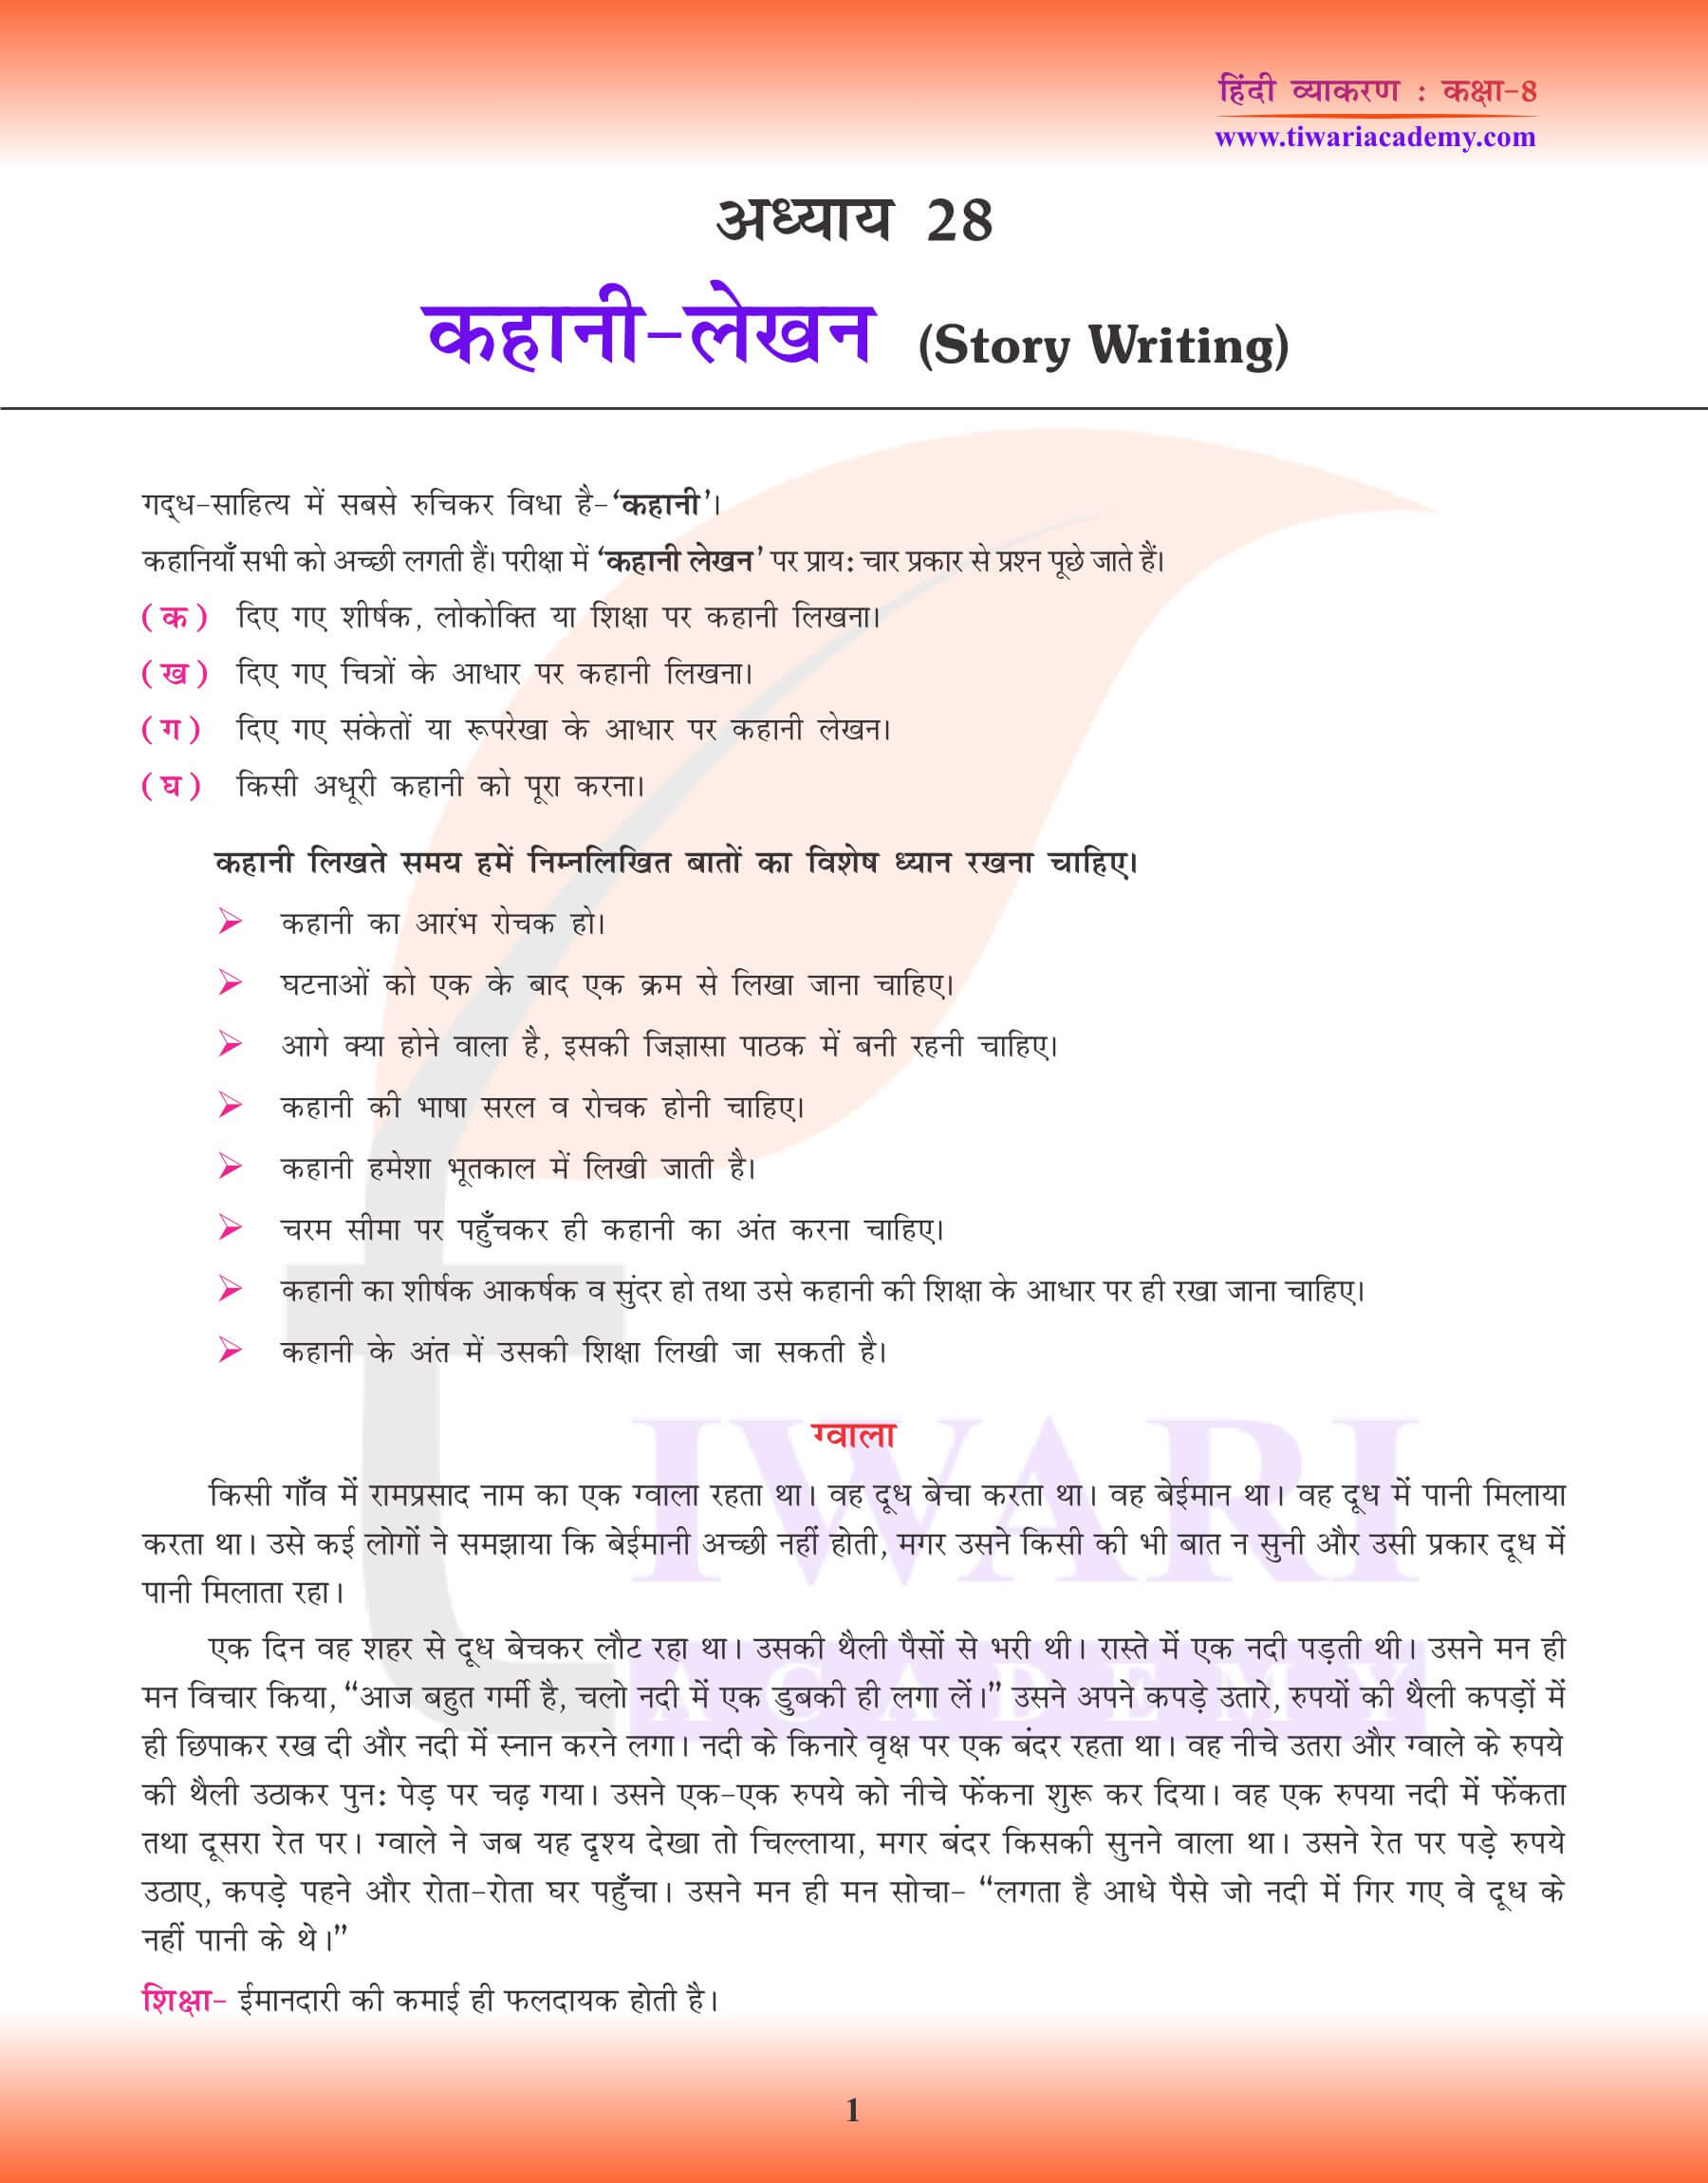 कक्षा 8 हिंदी व्याकरण कहानी लेखन